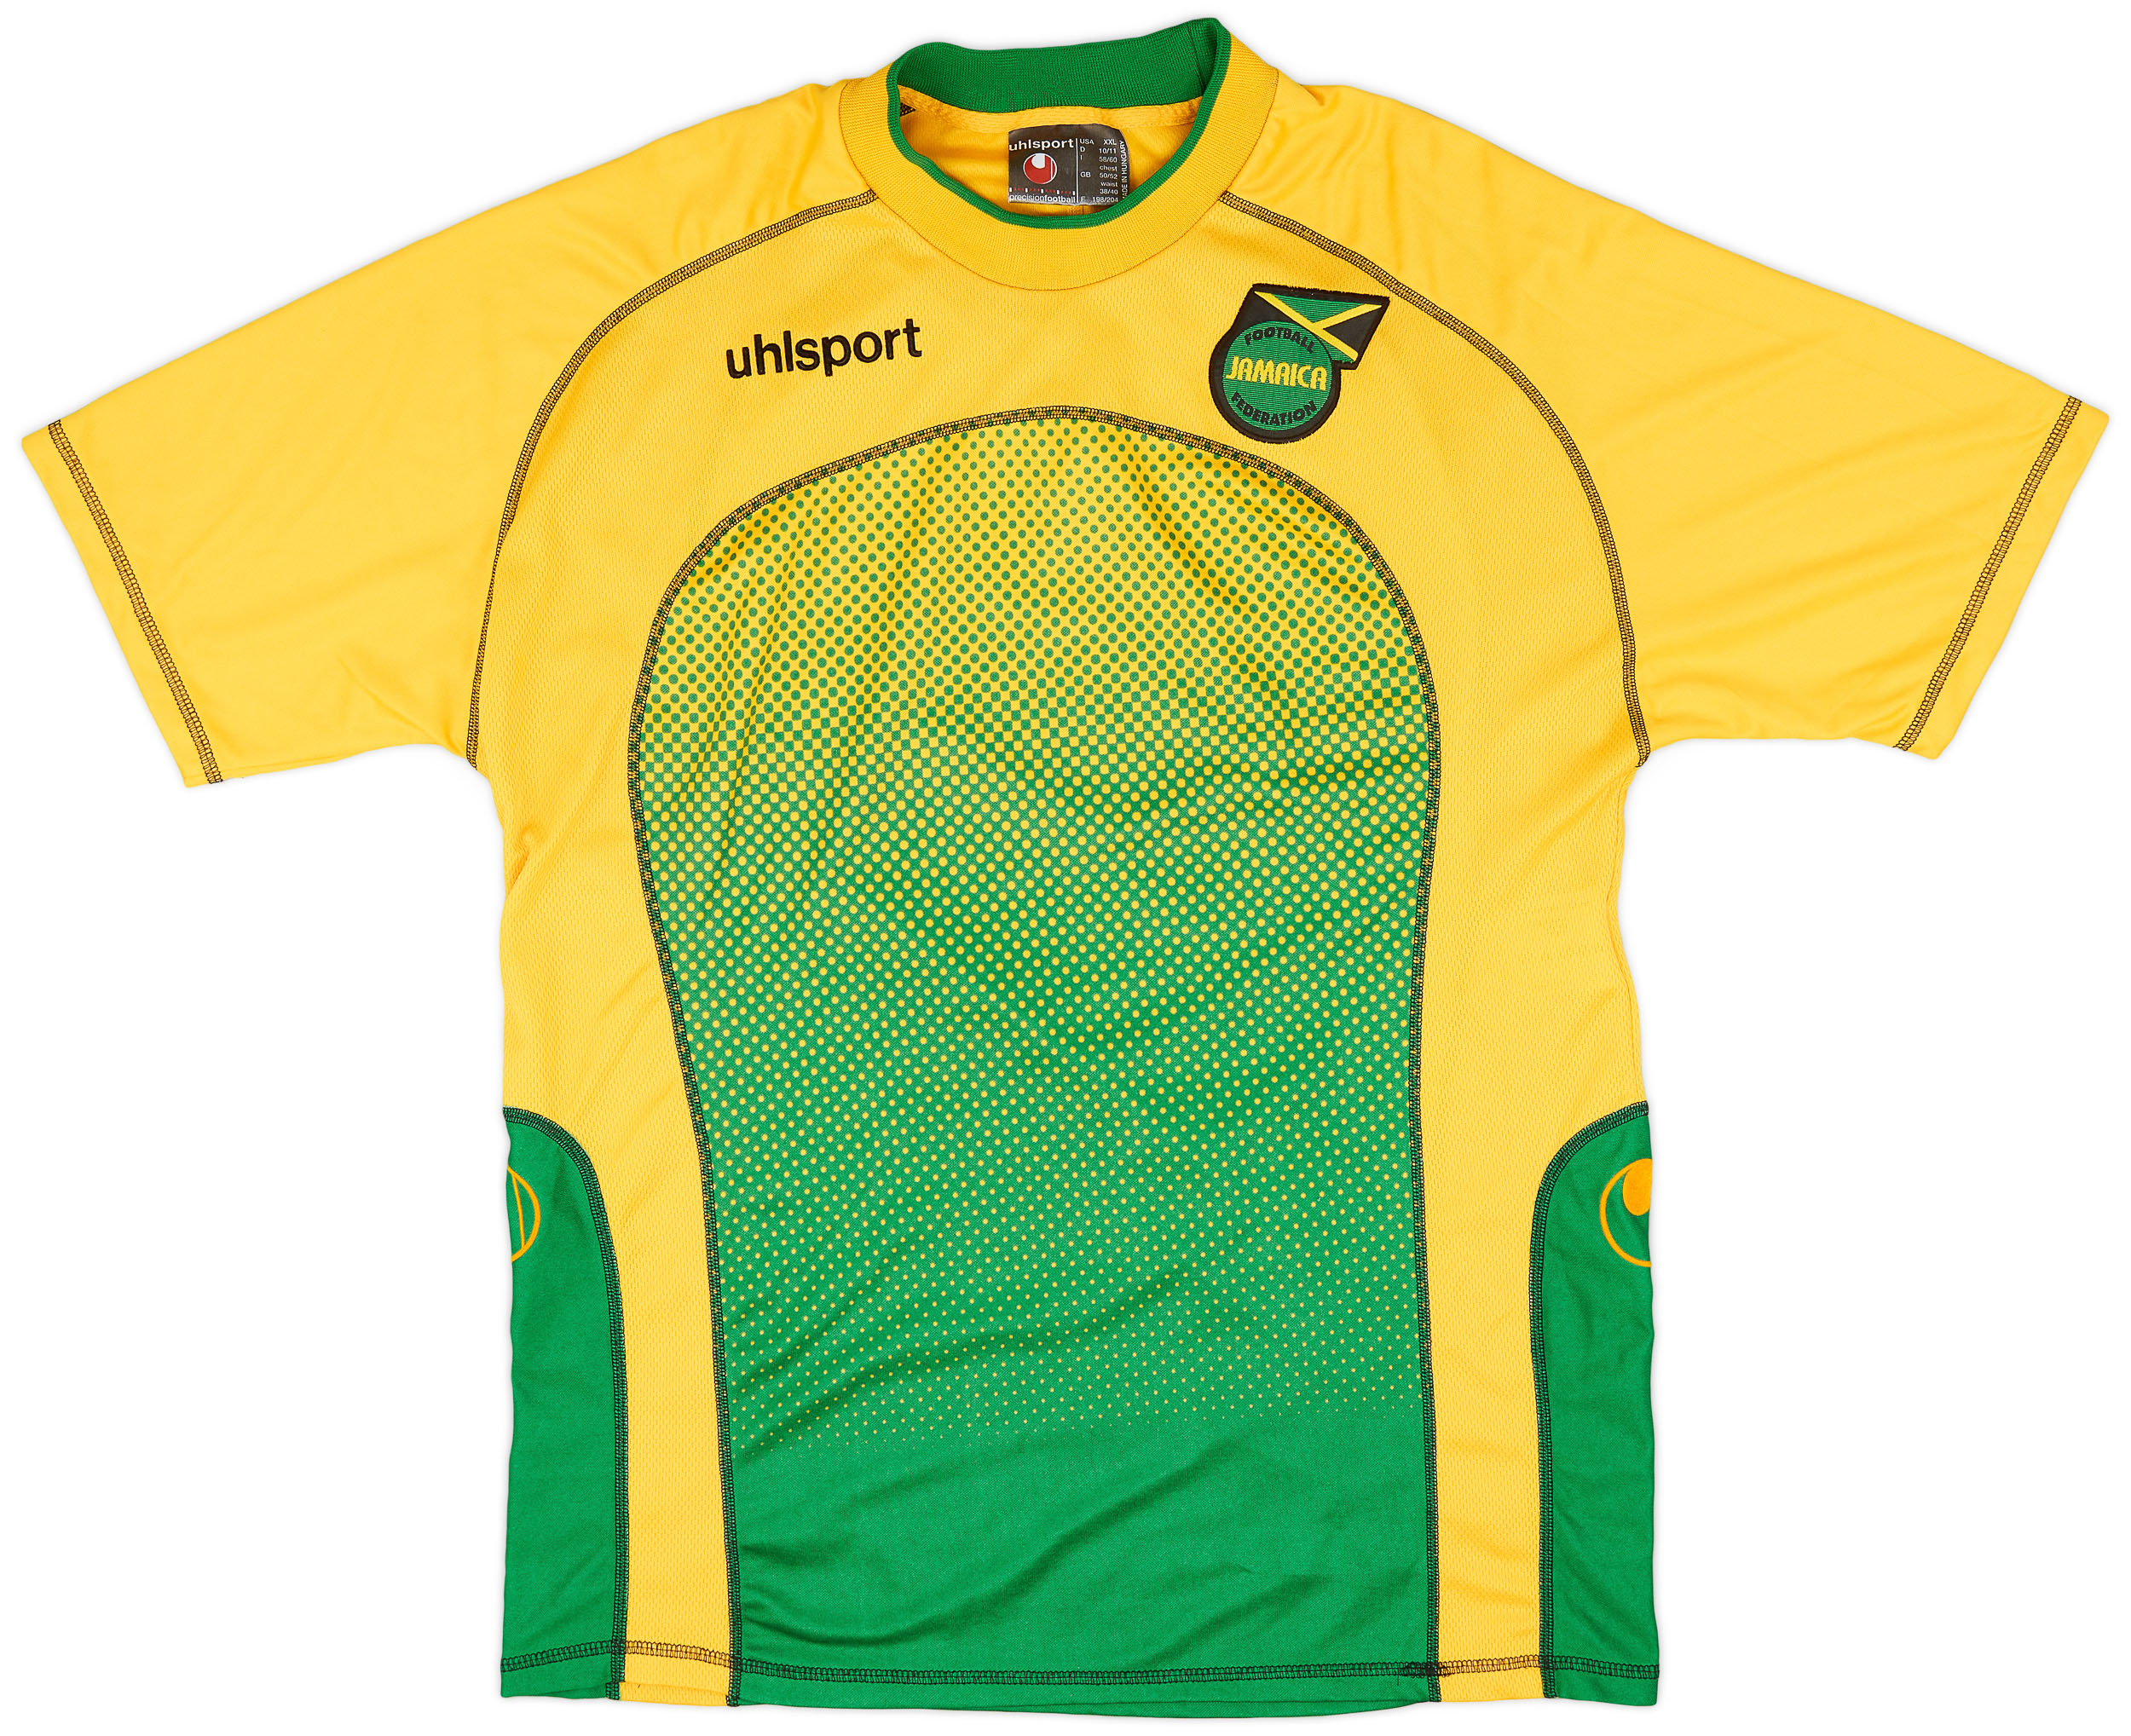 2004-06 Jamaica Home Shirt - 9/10 - ()